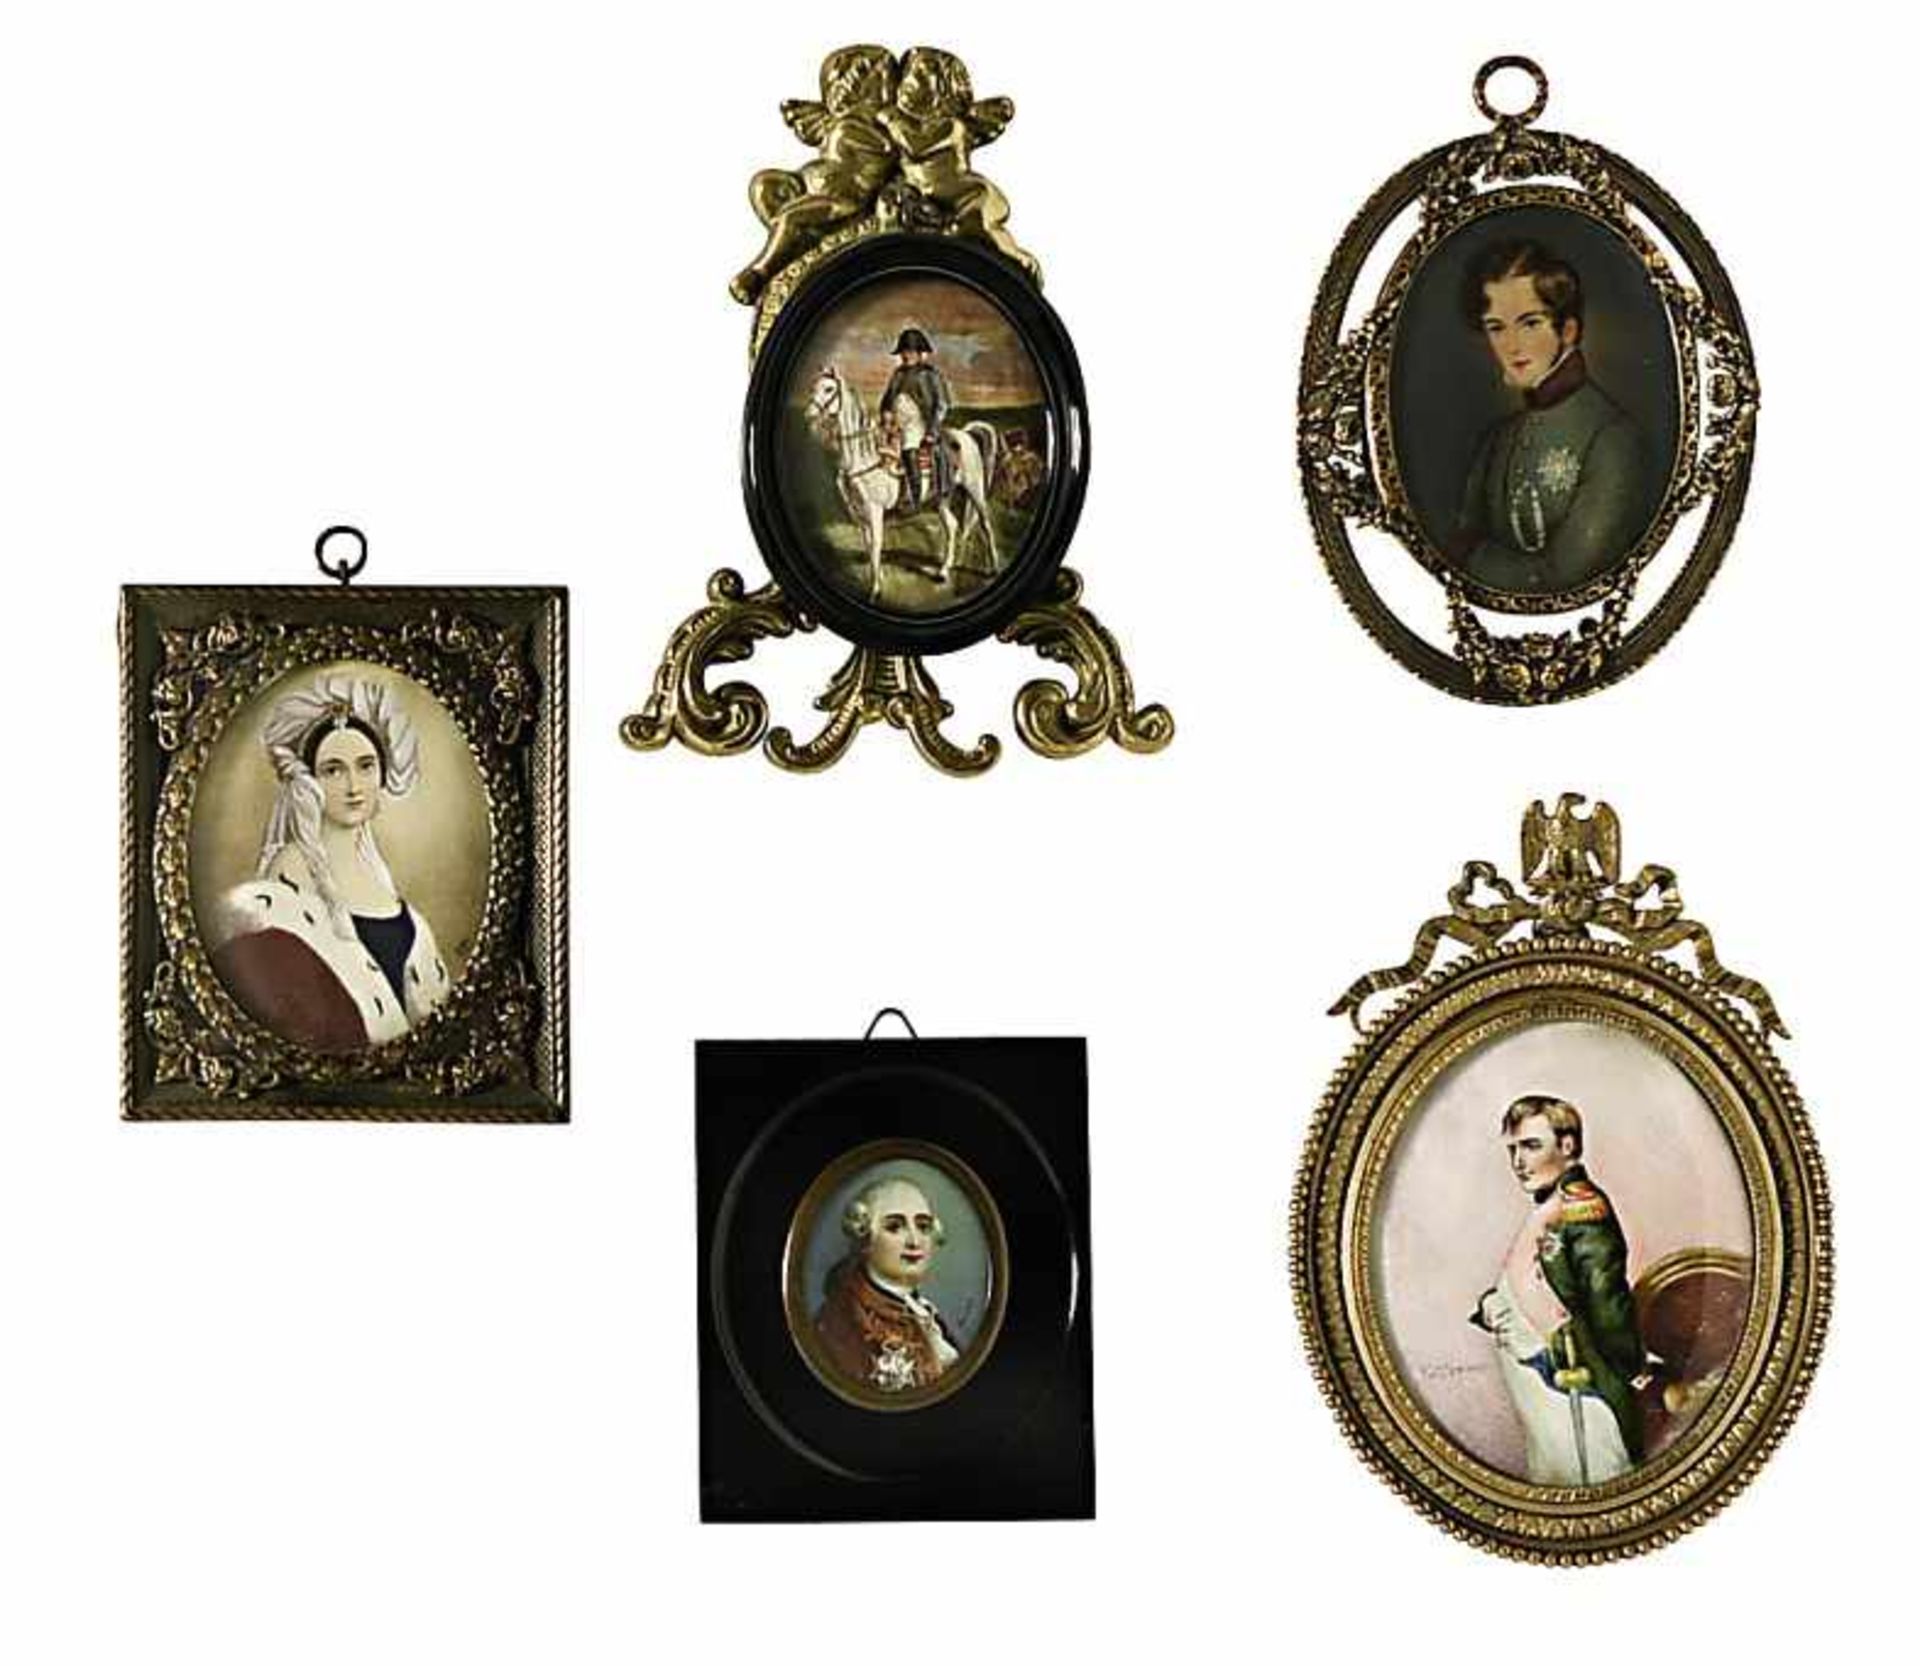 Napoleon u.a.Fünf Miniaturen u.a. auf fotografischer Grundlage. BA: 4,7 x 3,8 cm im Oval bis 9,5 x 8